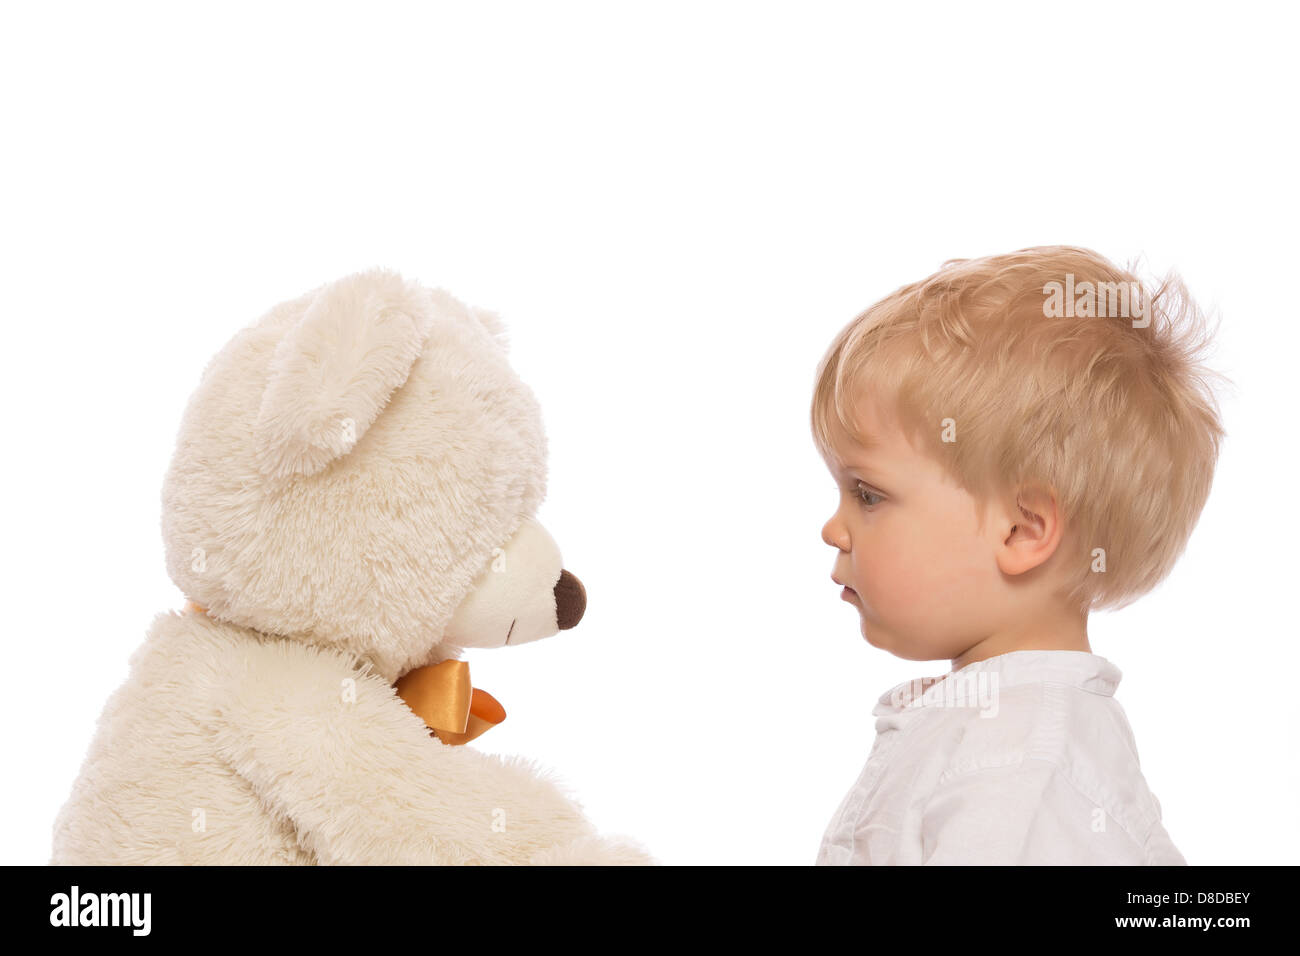 Enfant mignon avec des cheveux blonds à son ours en peluche. Isolé sur fond blanc. Banque D'Images